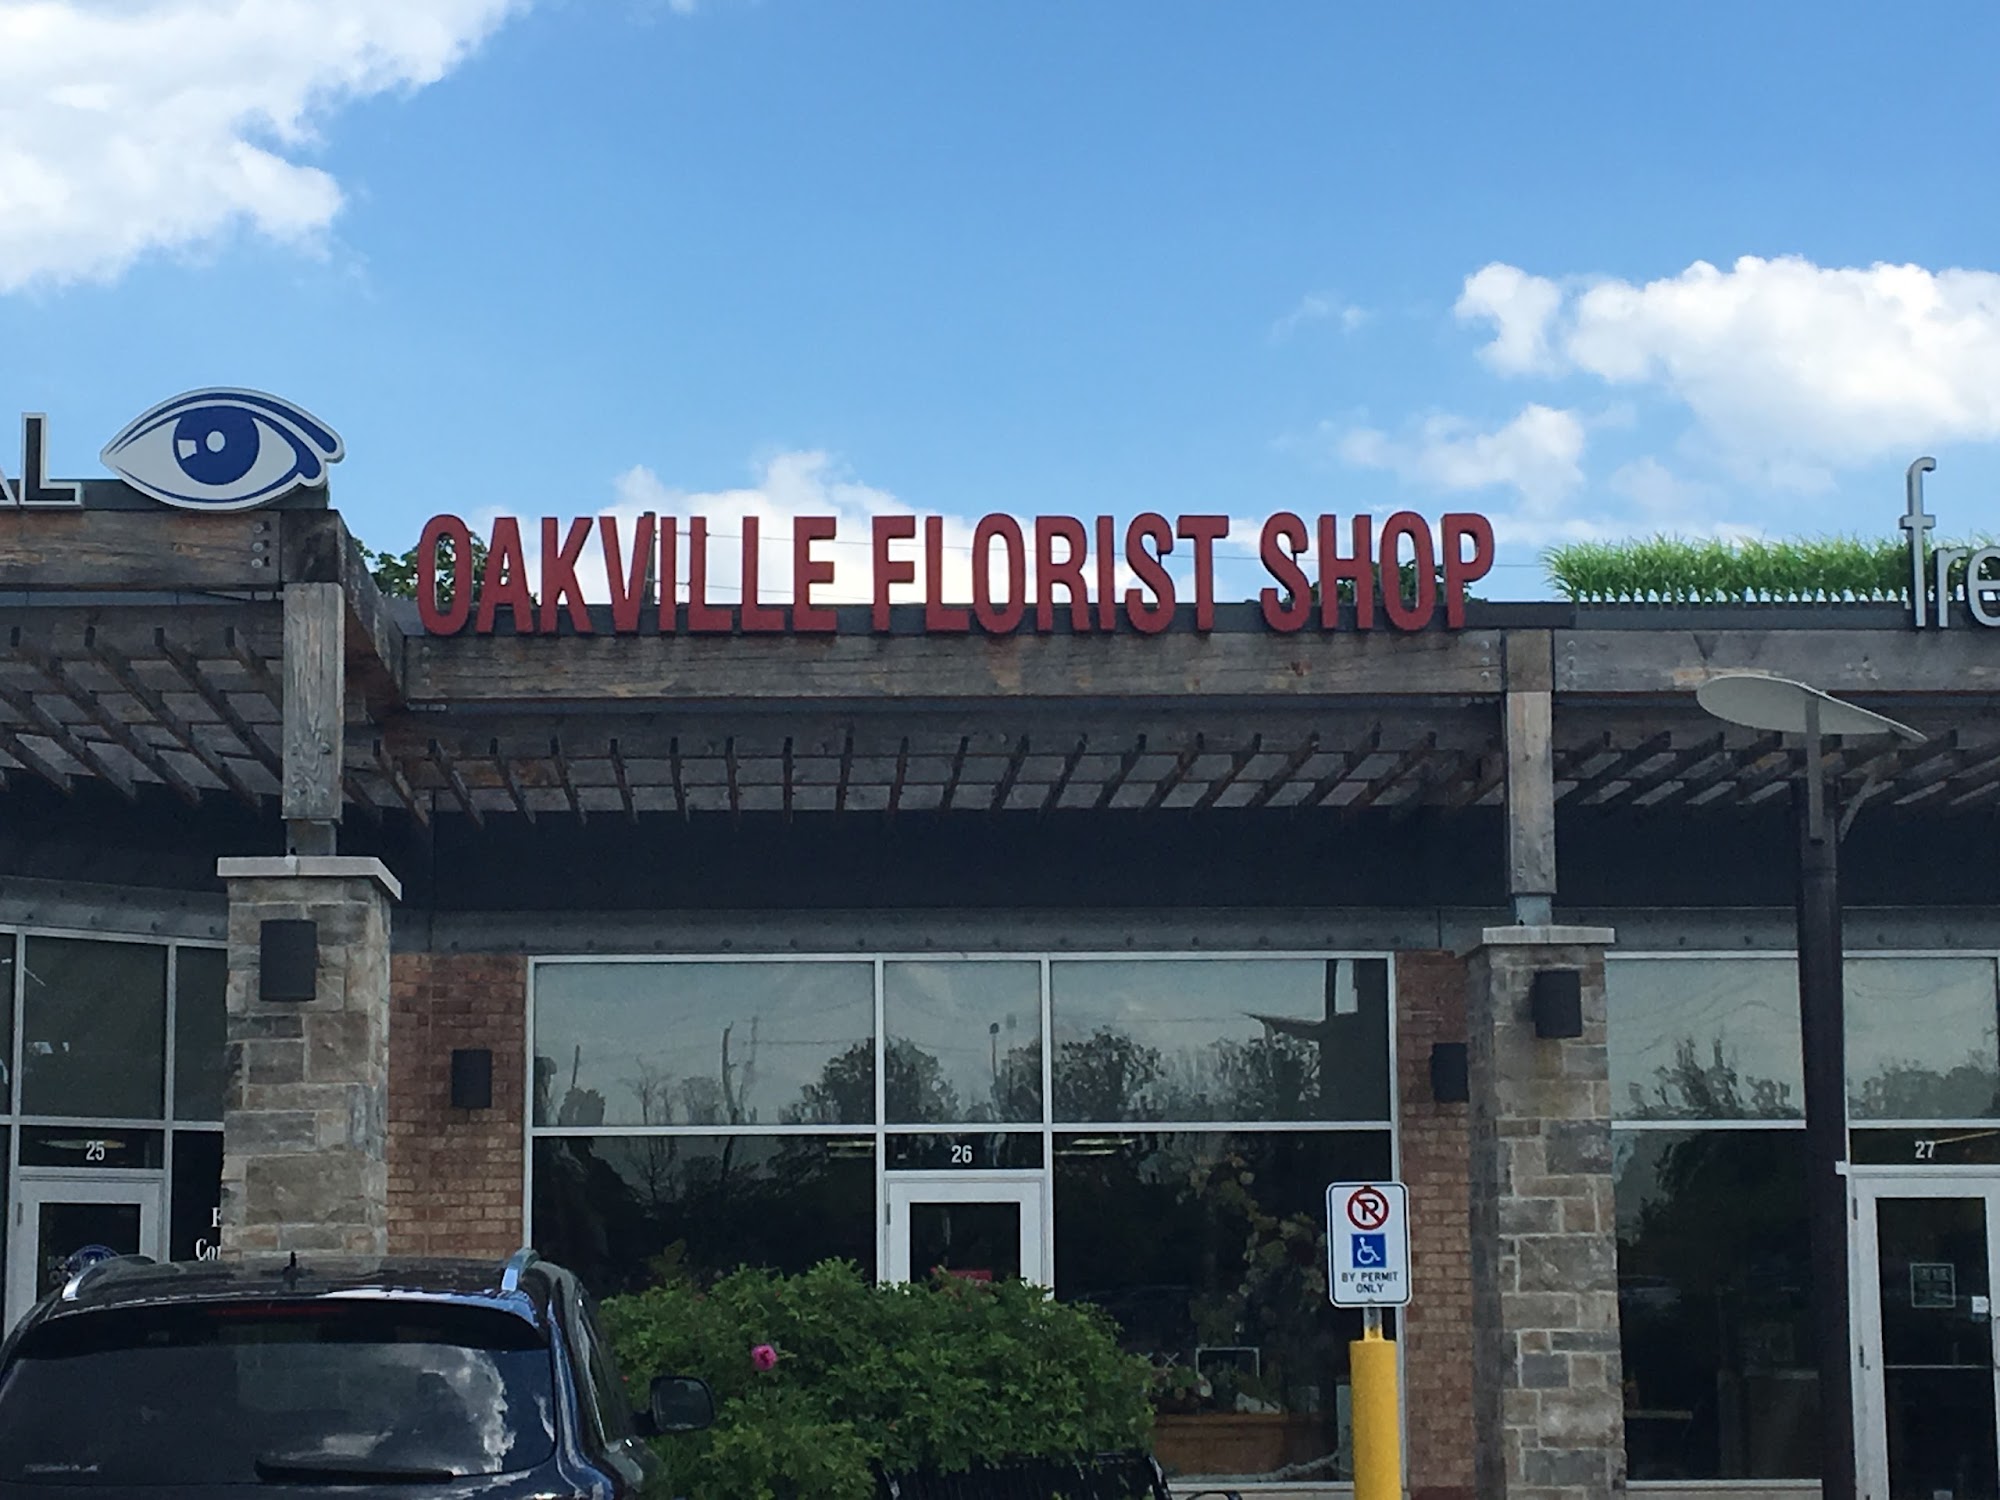 Oakville Florist Shop